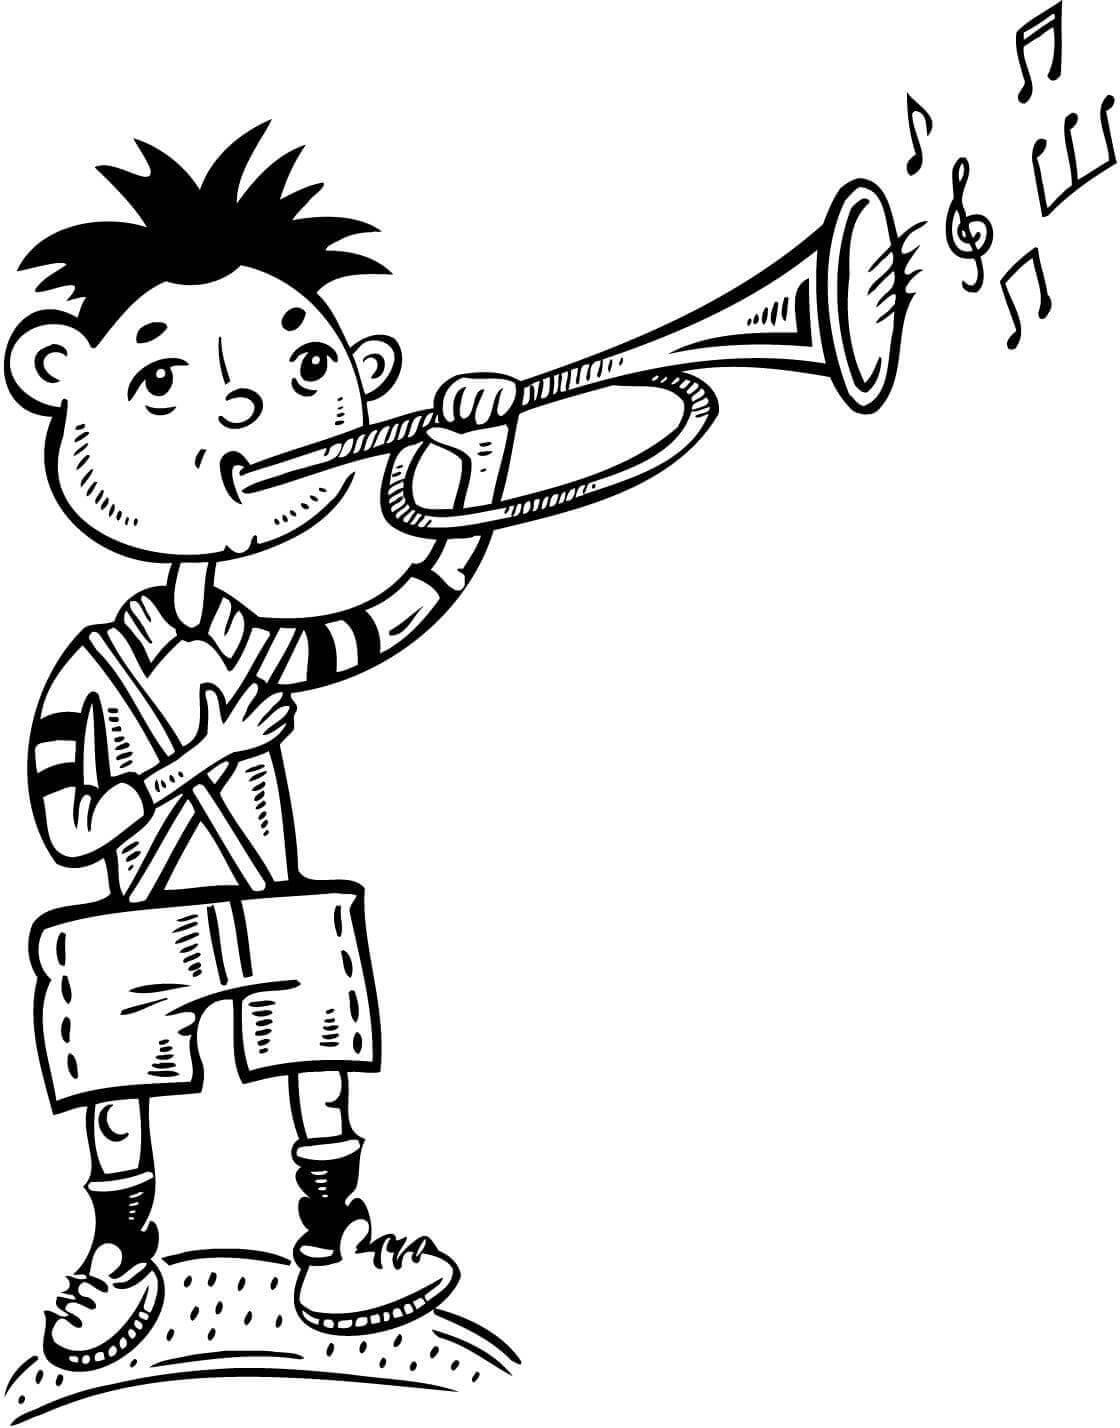 트럼펫을 연주하는 기본 소년